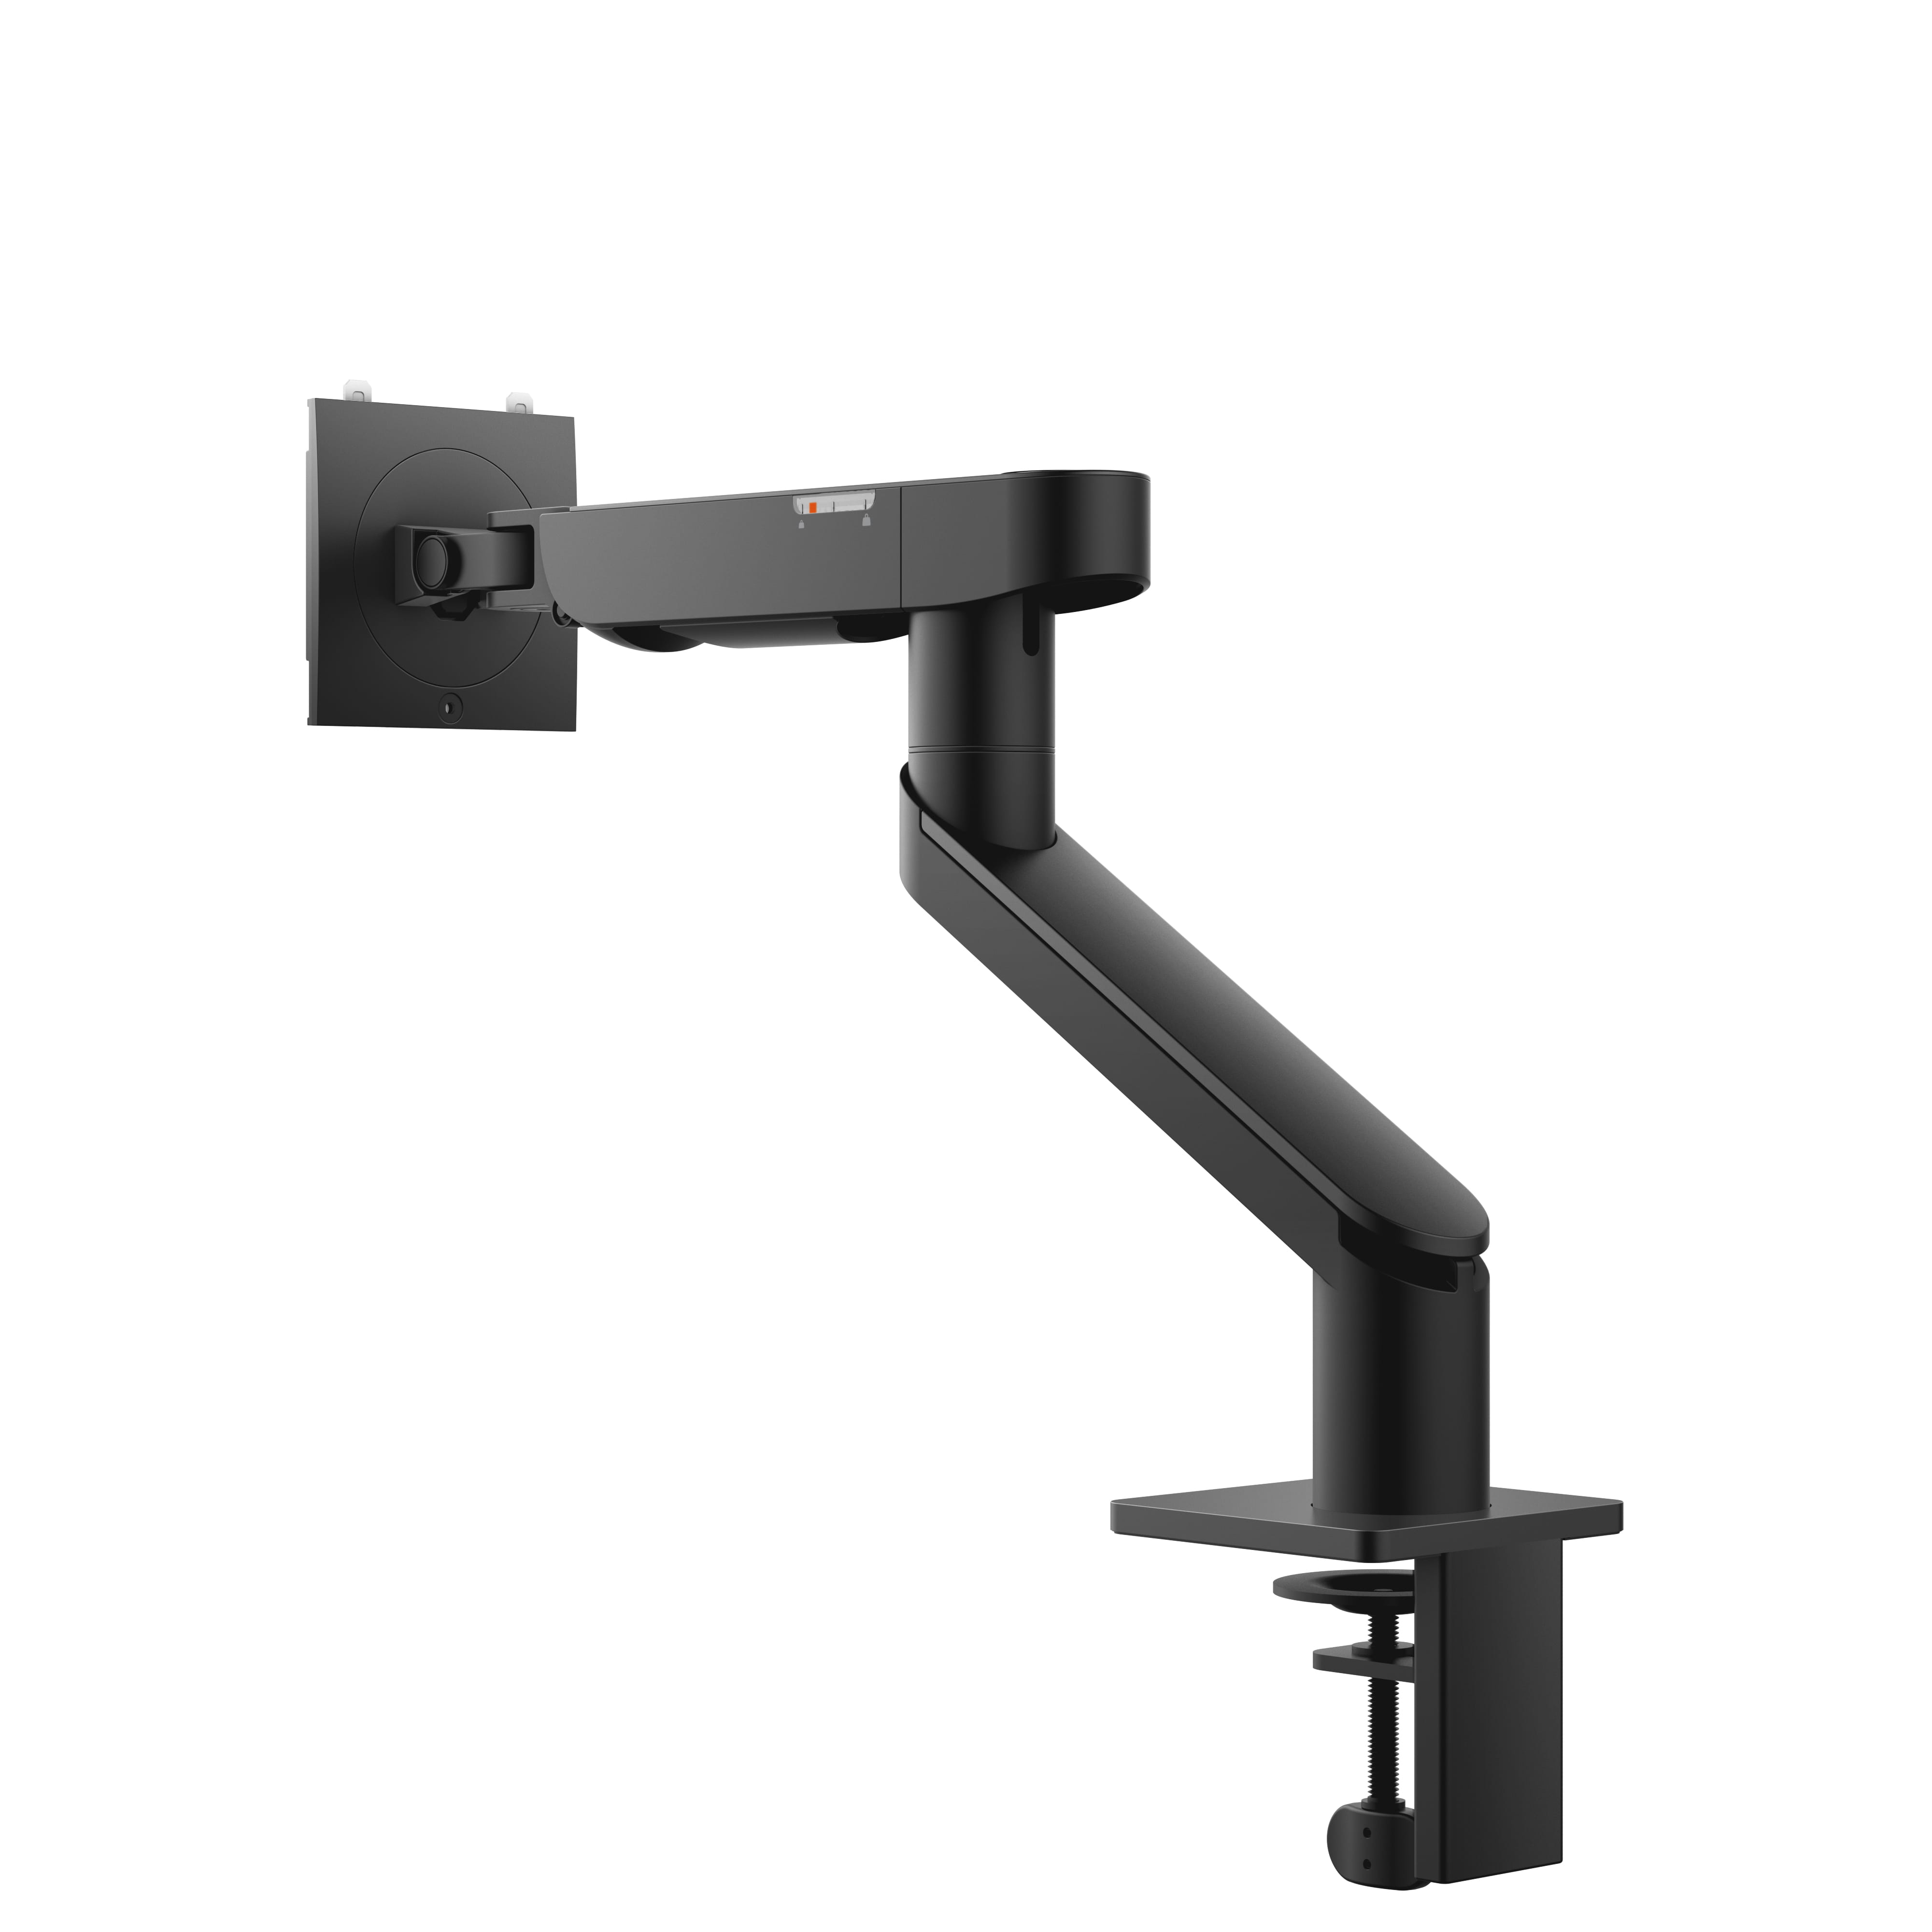 Single Monitor Arm - MSA20 - Befestigungskit - einstellbarer Arm - für LCD-Display - Metall - Schwarz - Bildschirmgröße: 48.3-96.5 cm (19"-38")